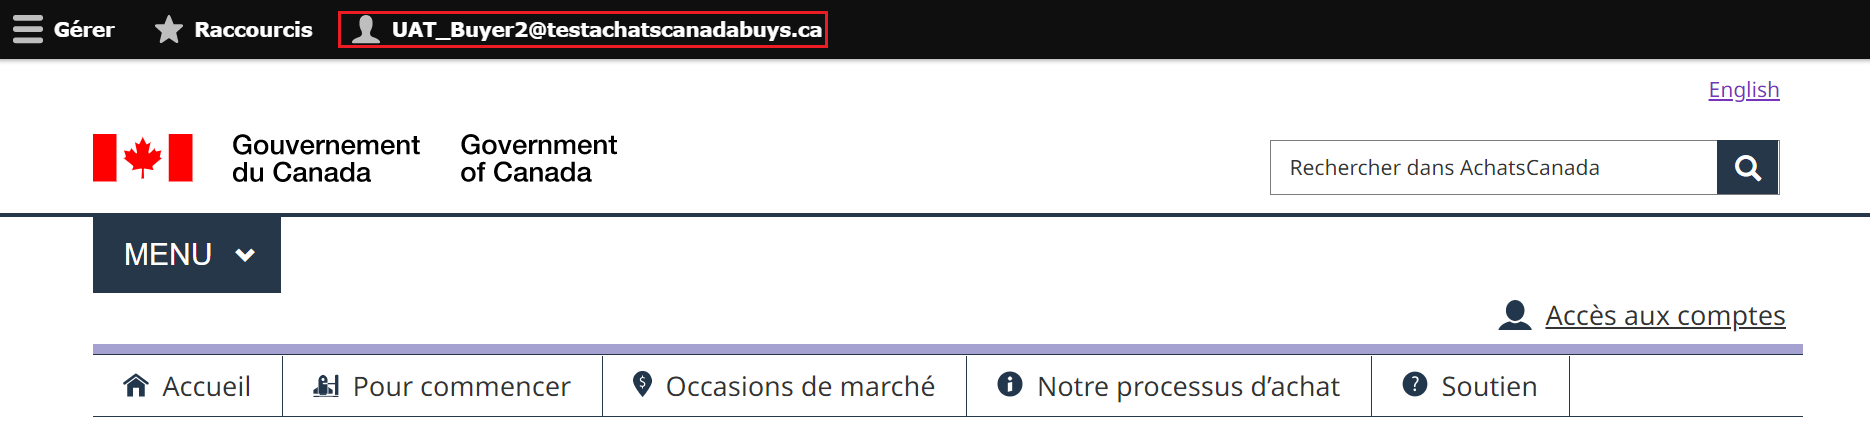 une capture d'écran de la page d'accueil d’Achats, avec un nom de compte mis en évidence.